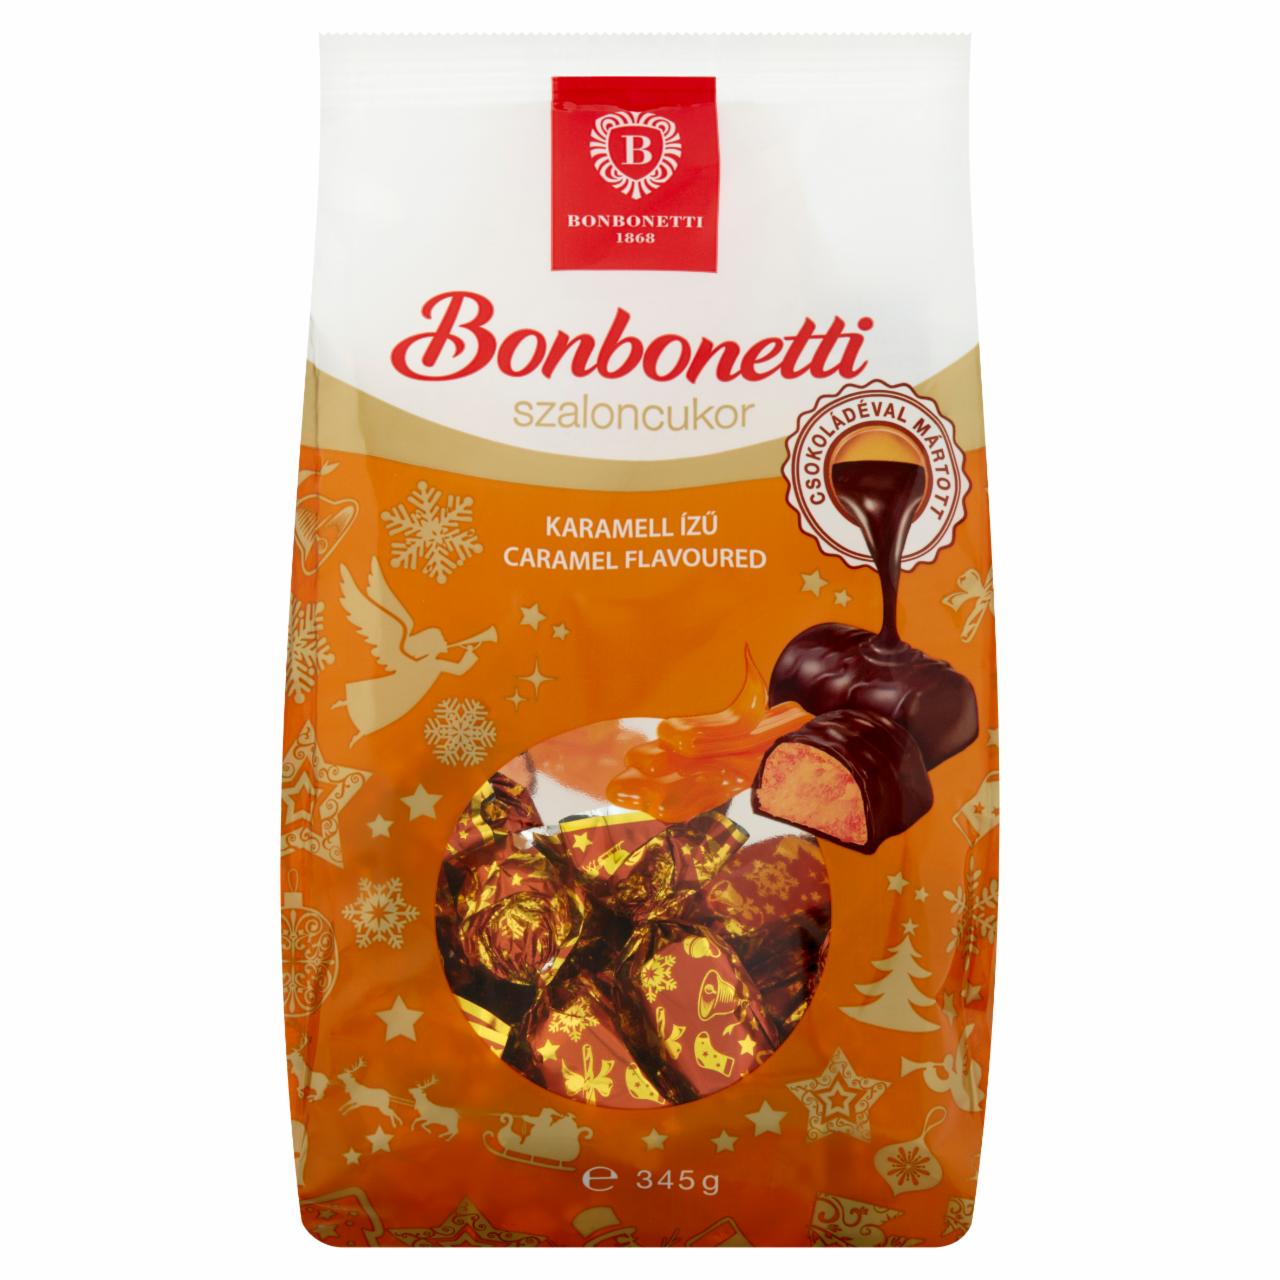 Képek - Bonbonetti étcsokoládéval mártott karamell ízű szaloncukor 345 g